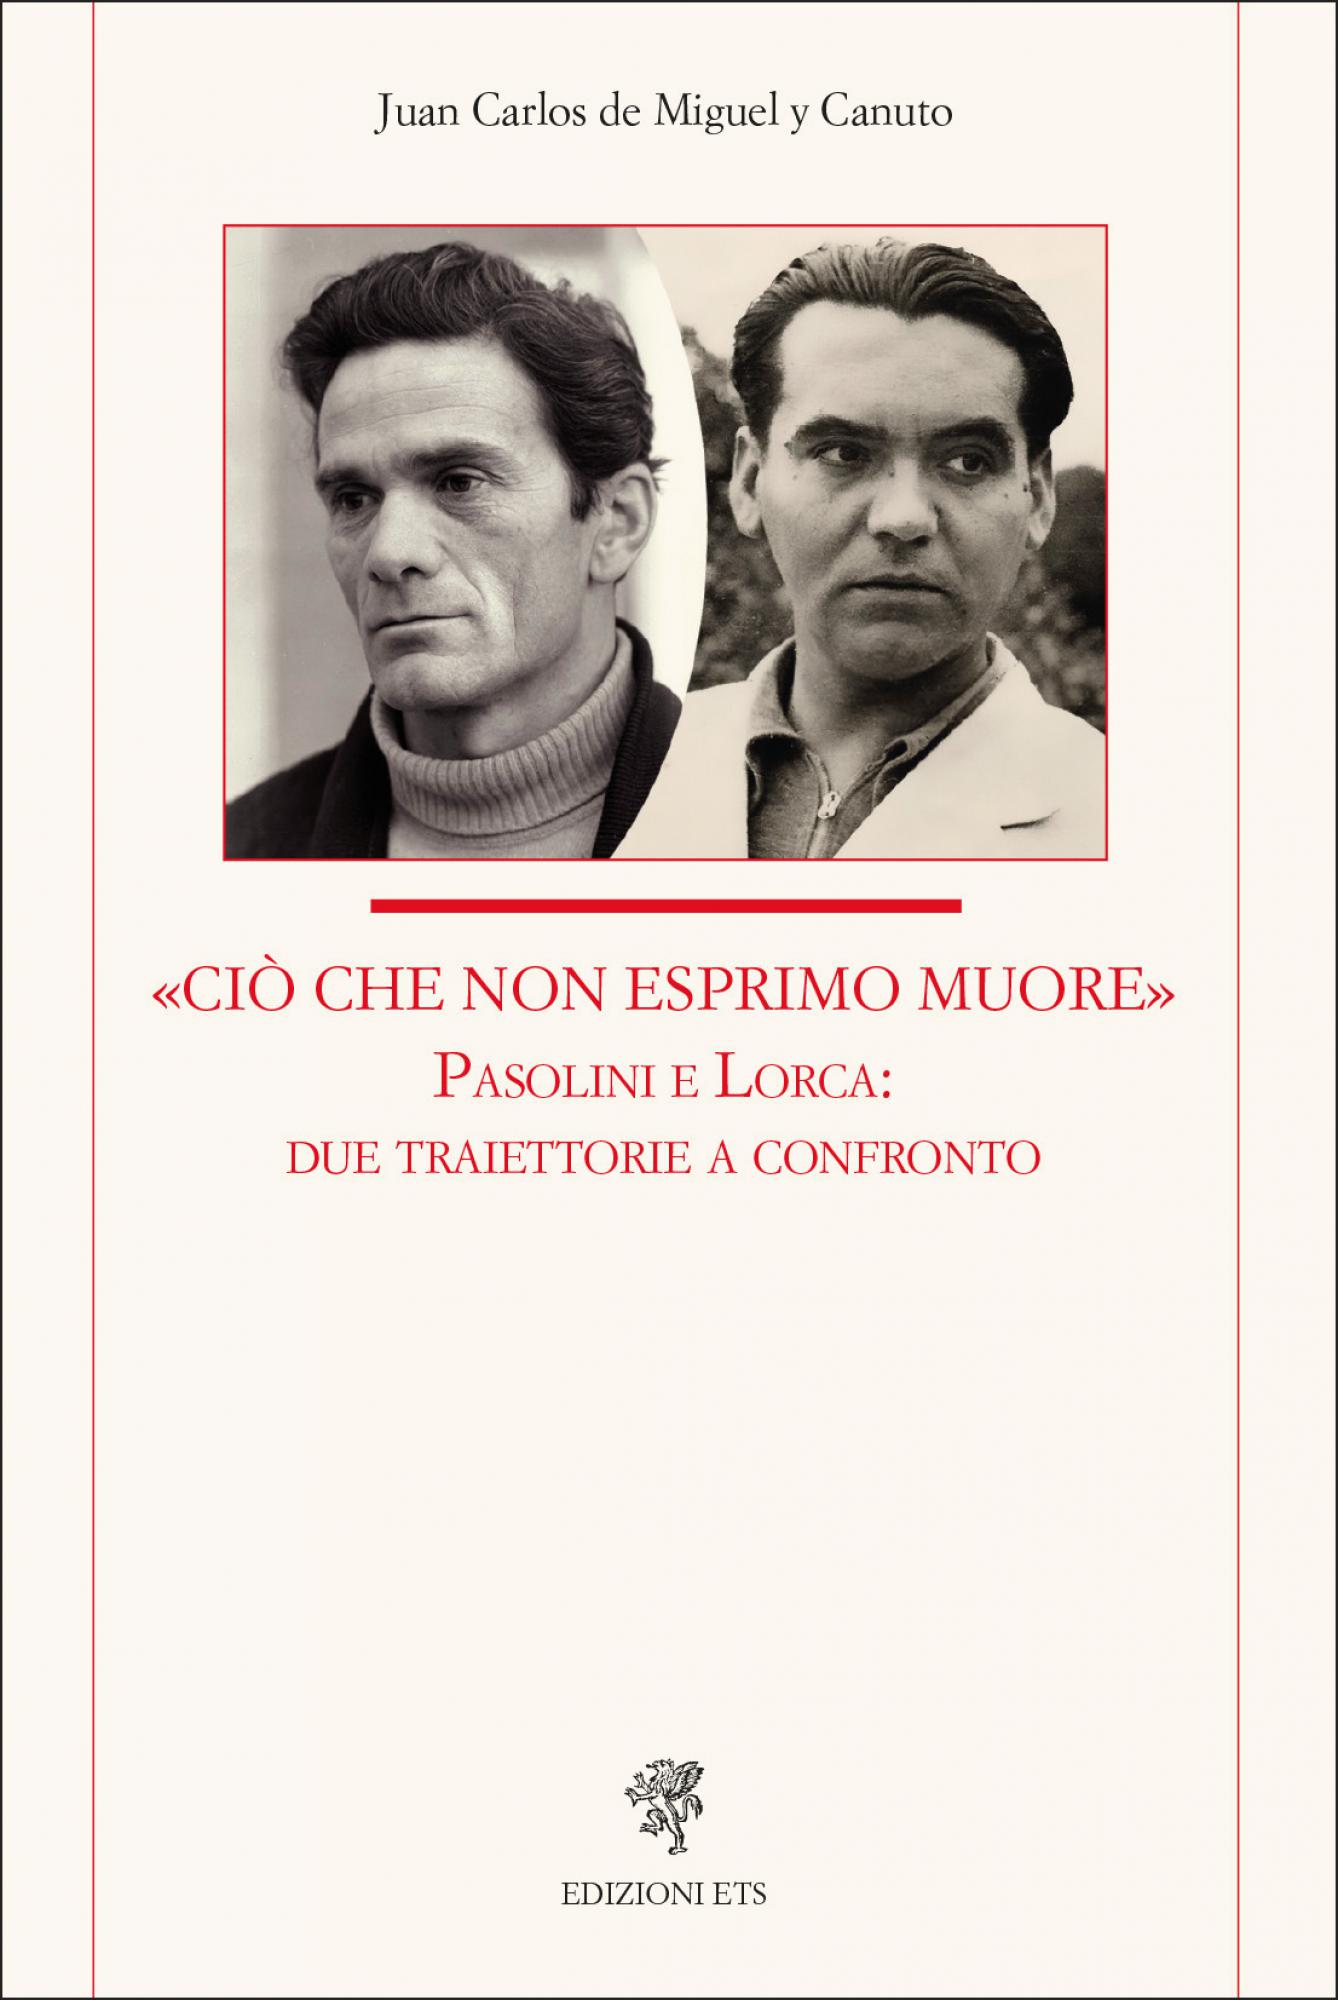 <span>«Ciò che non esprimo muore»</span>.Pasolini e Lorca: due traiettorie a confronto